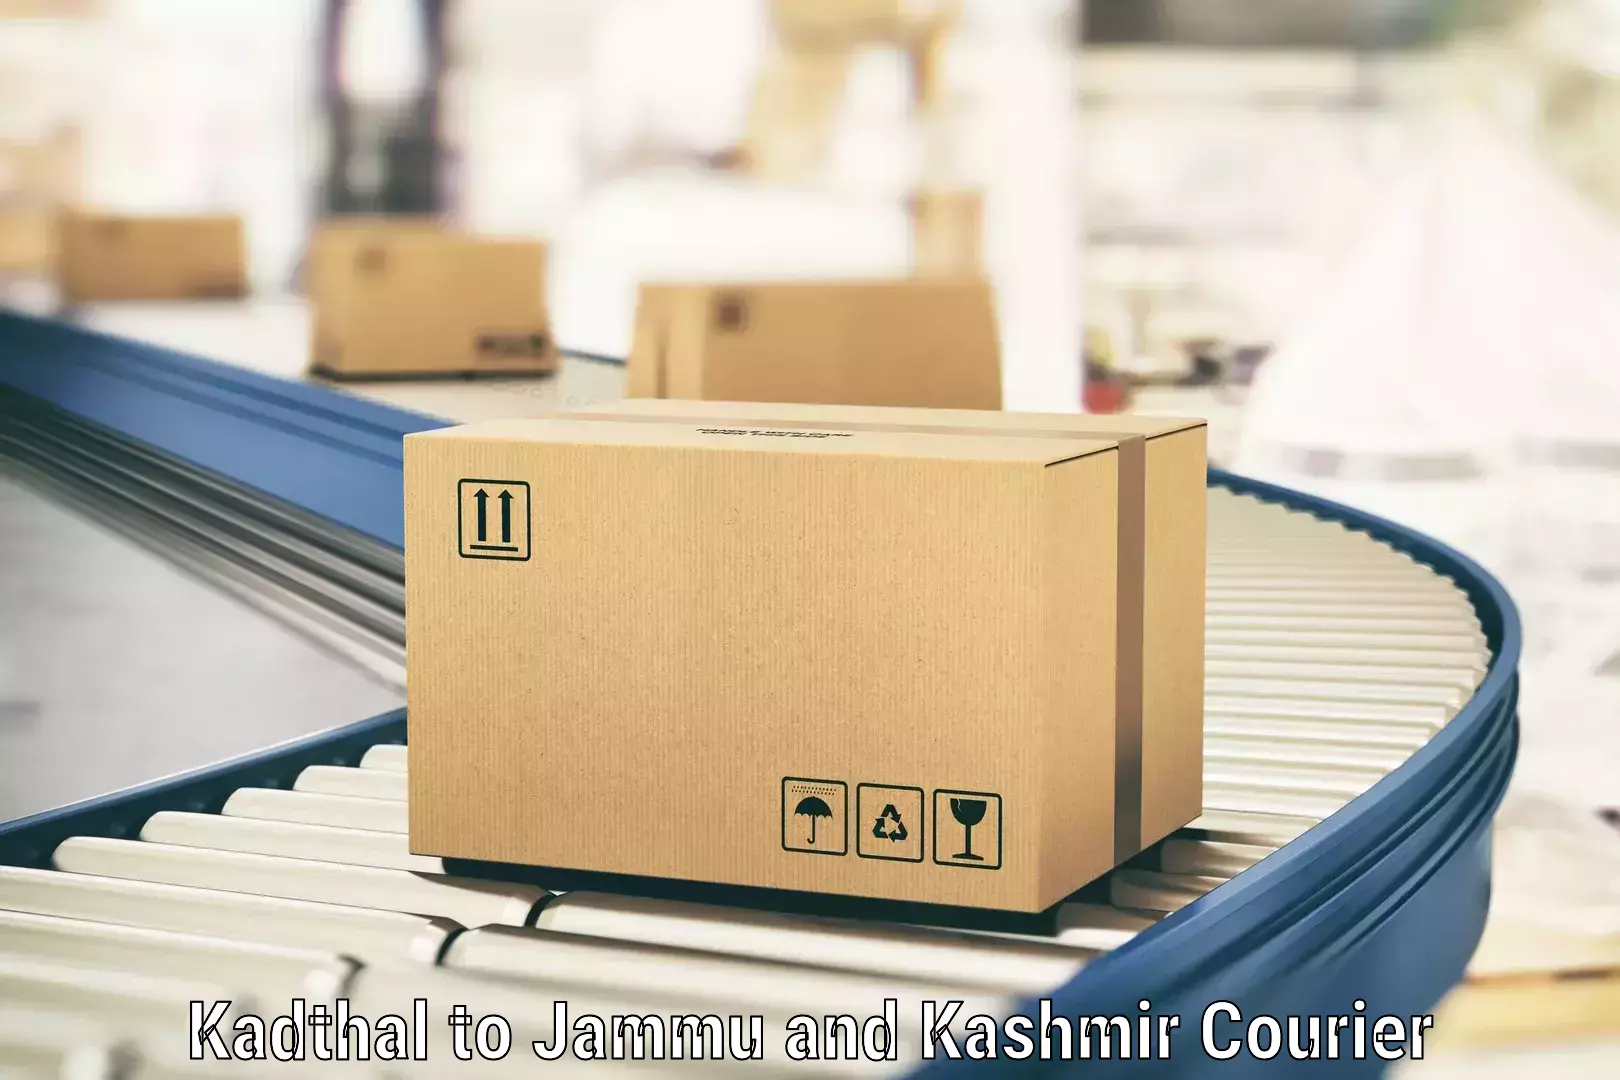 Affordable parcel service Kadthal to Kargil